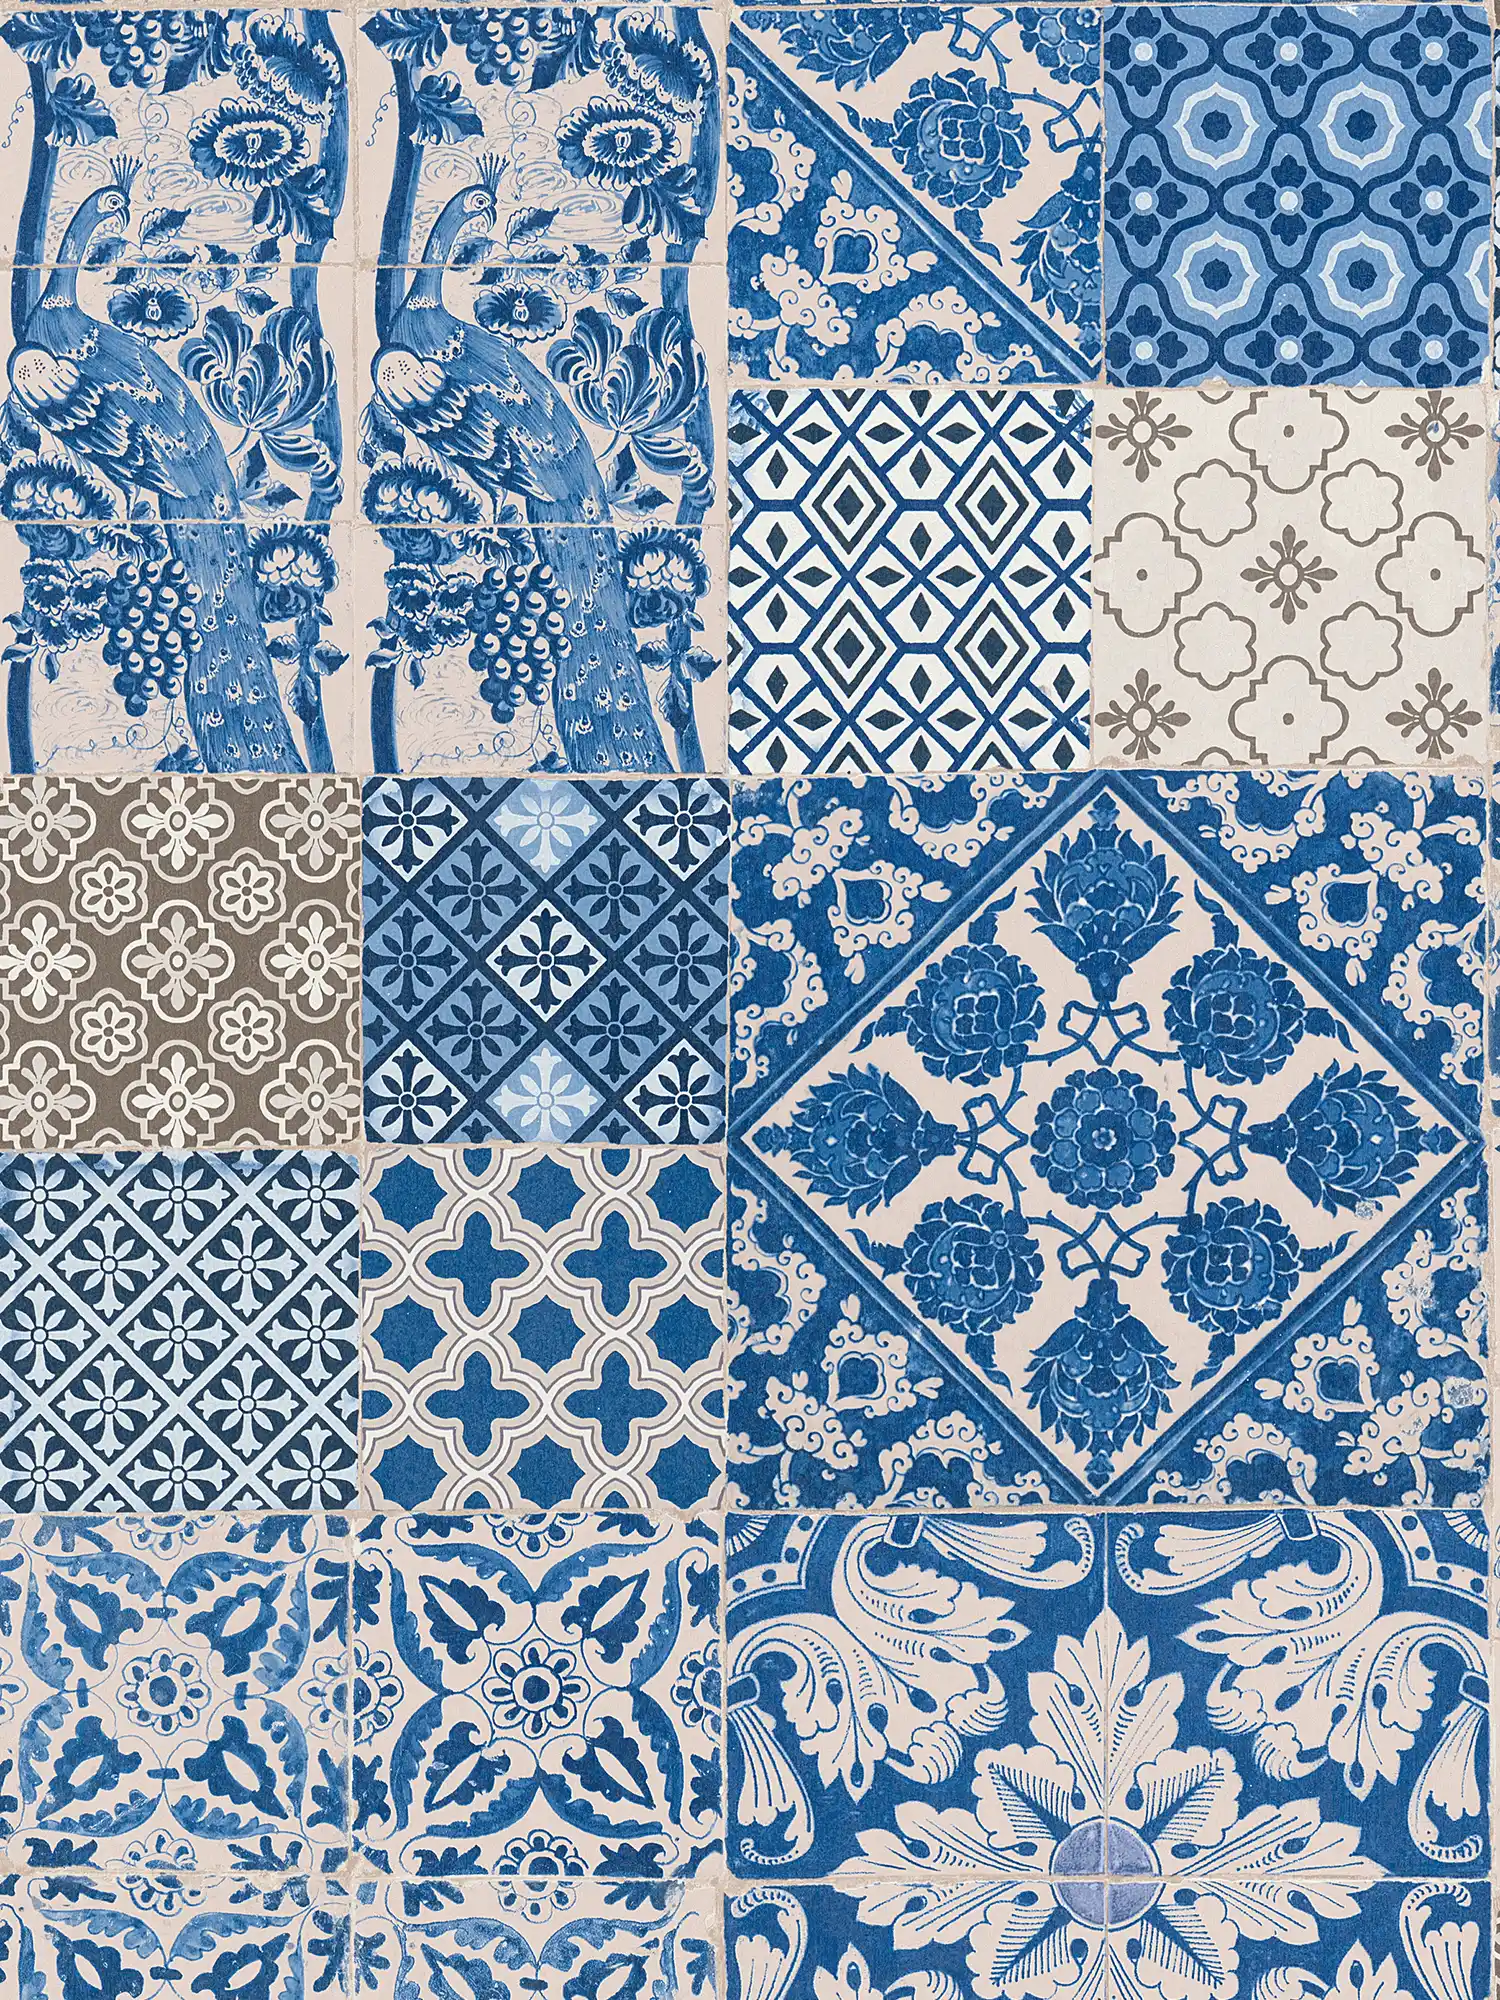 Tapete in Fliesen & Mosaik Design – Blau, Creme, Violett
